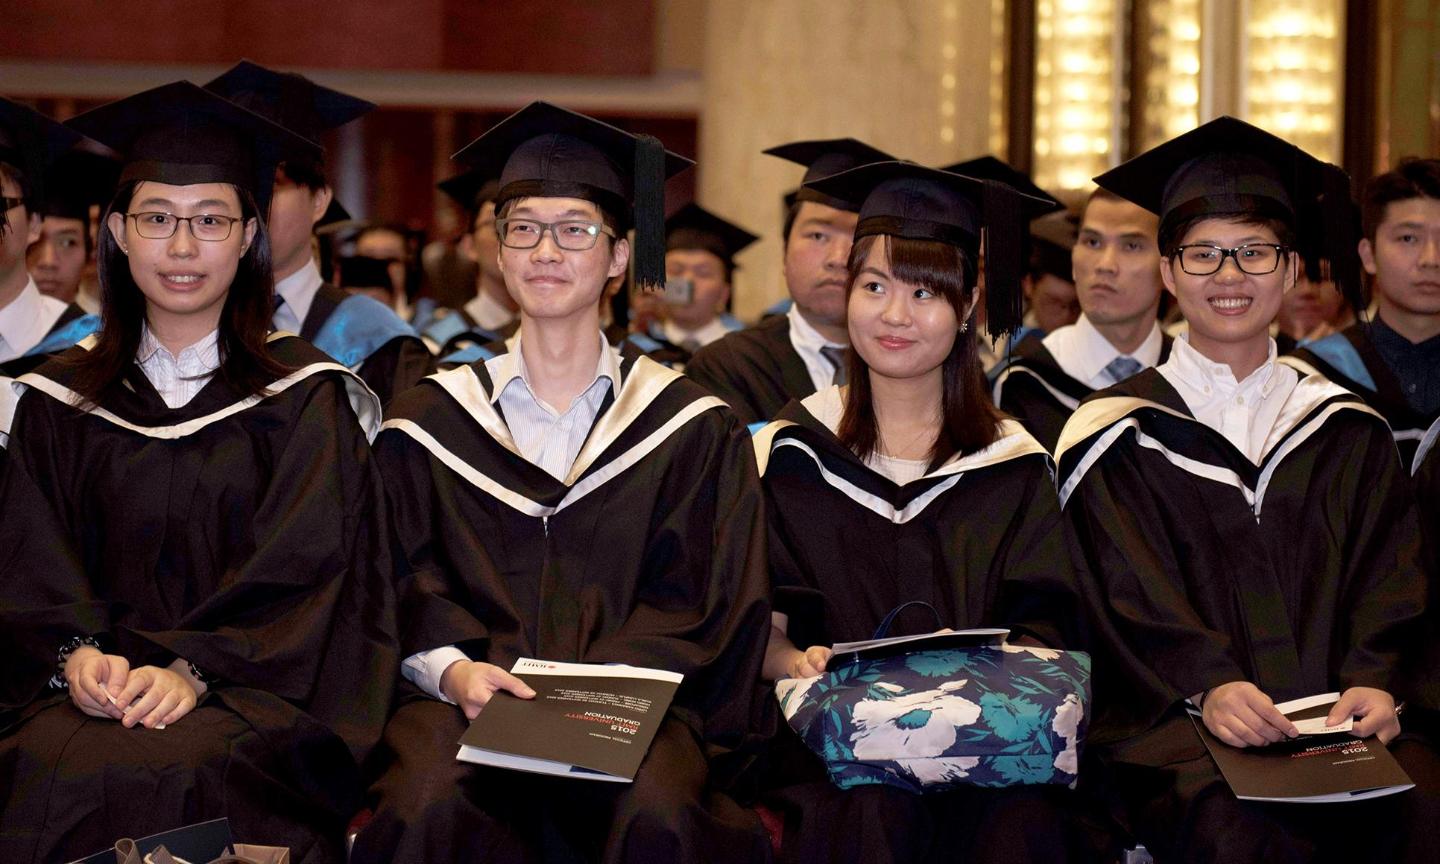 Group of graduates at the Hong Kong ceremony